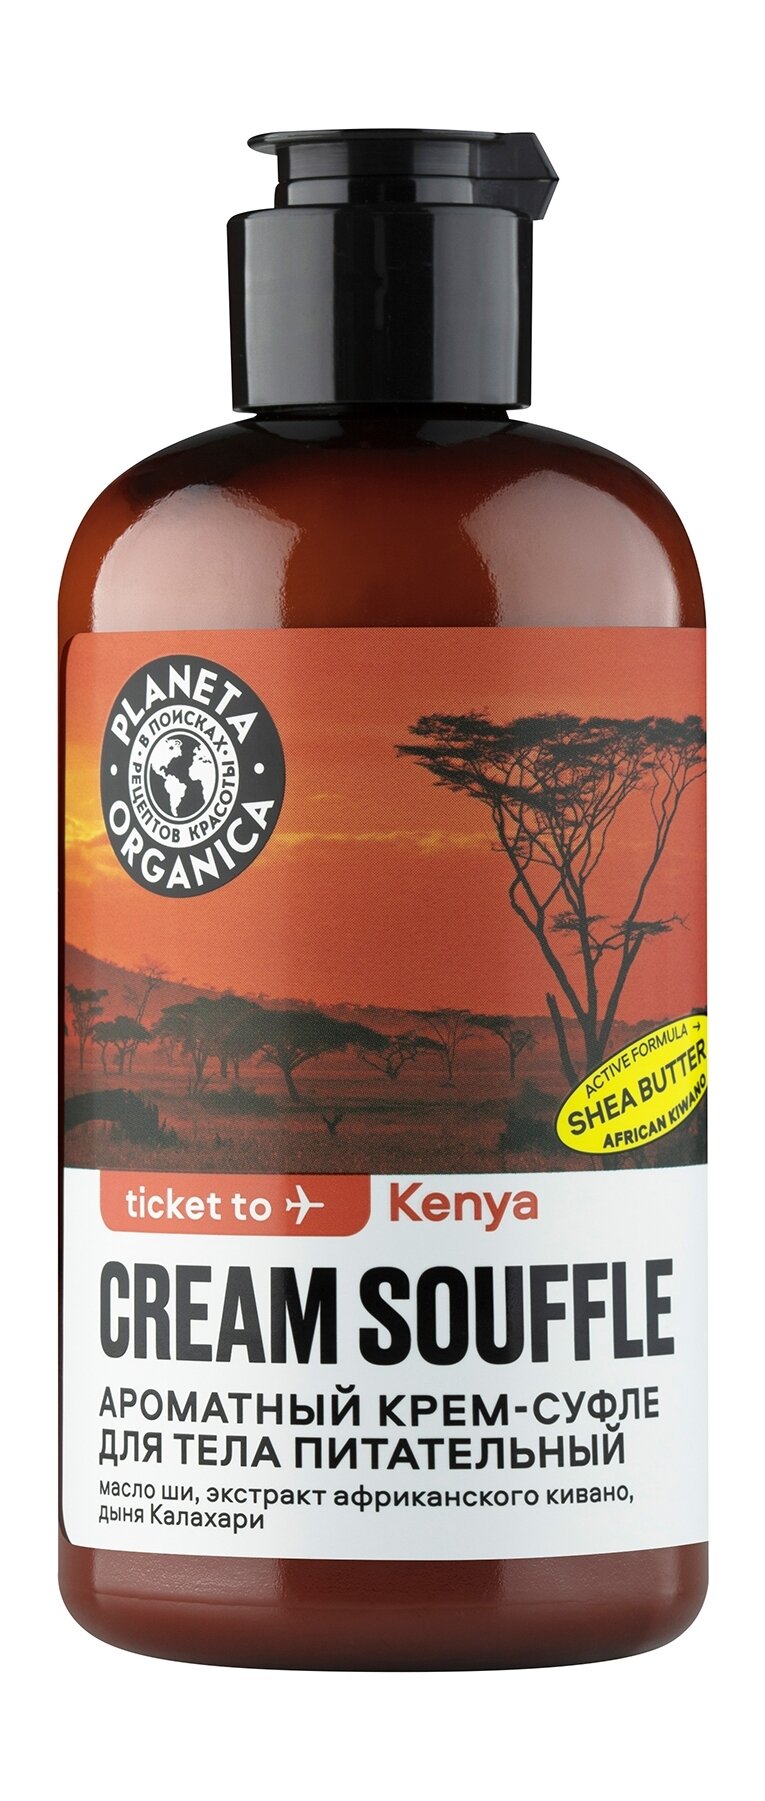 PLANETA ORGANICA Крем-суфле ароматный для тела Ticket to Kenya питательный, 100 мл